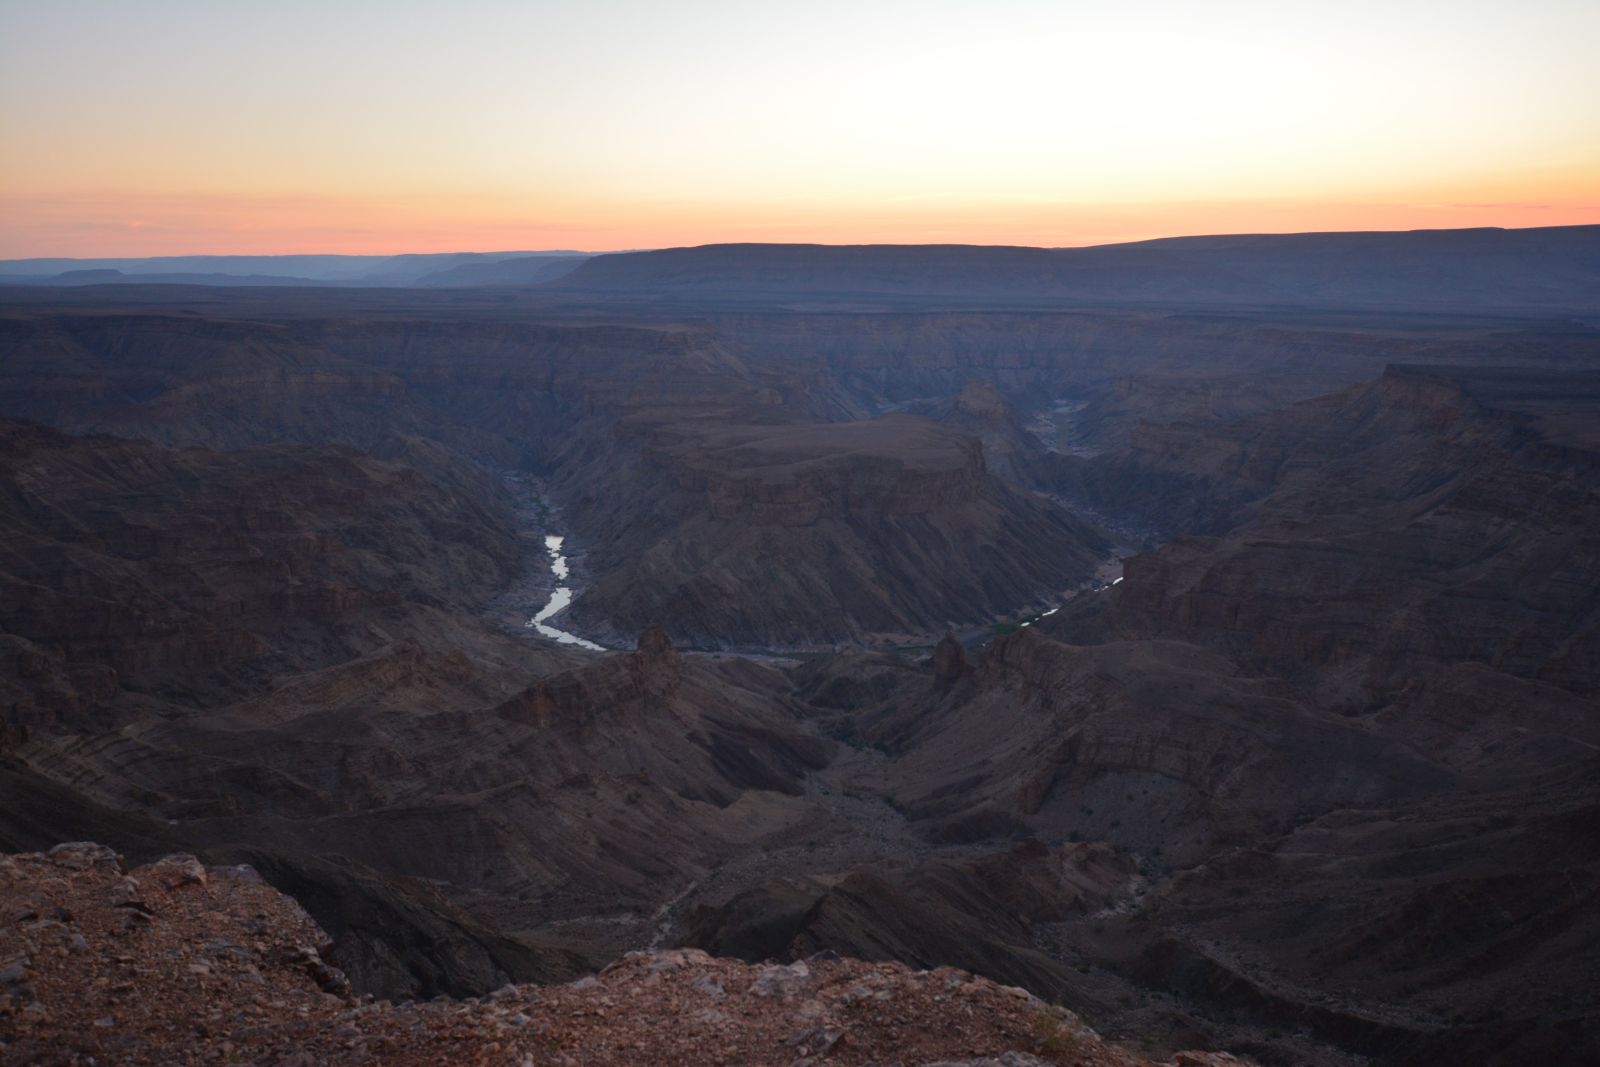 Dann geht es auch direkt weiter zum Fish River Canyon, wo wir nicht nur einen weiteren traumhaften Sonnenuntergang erleben, sondern mit etwas Glück auch die ersten Springböcke, Oryx-Antilopen und Zebras entdecken. Und es warten noch so viele Tiere auf die